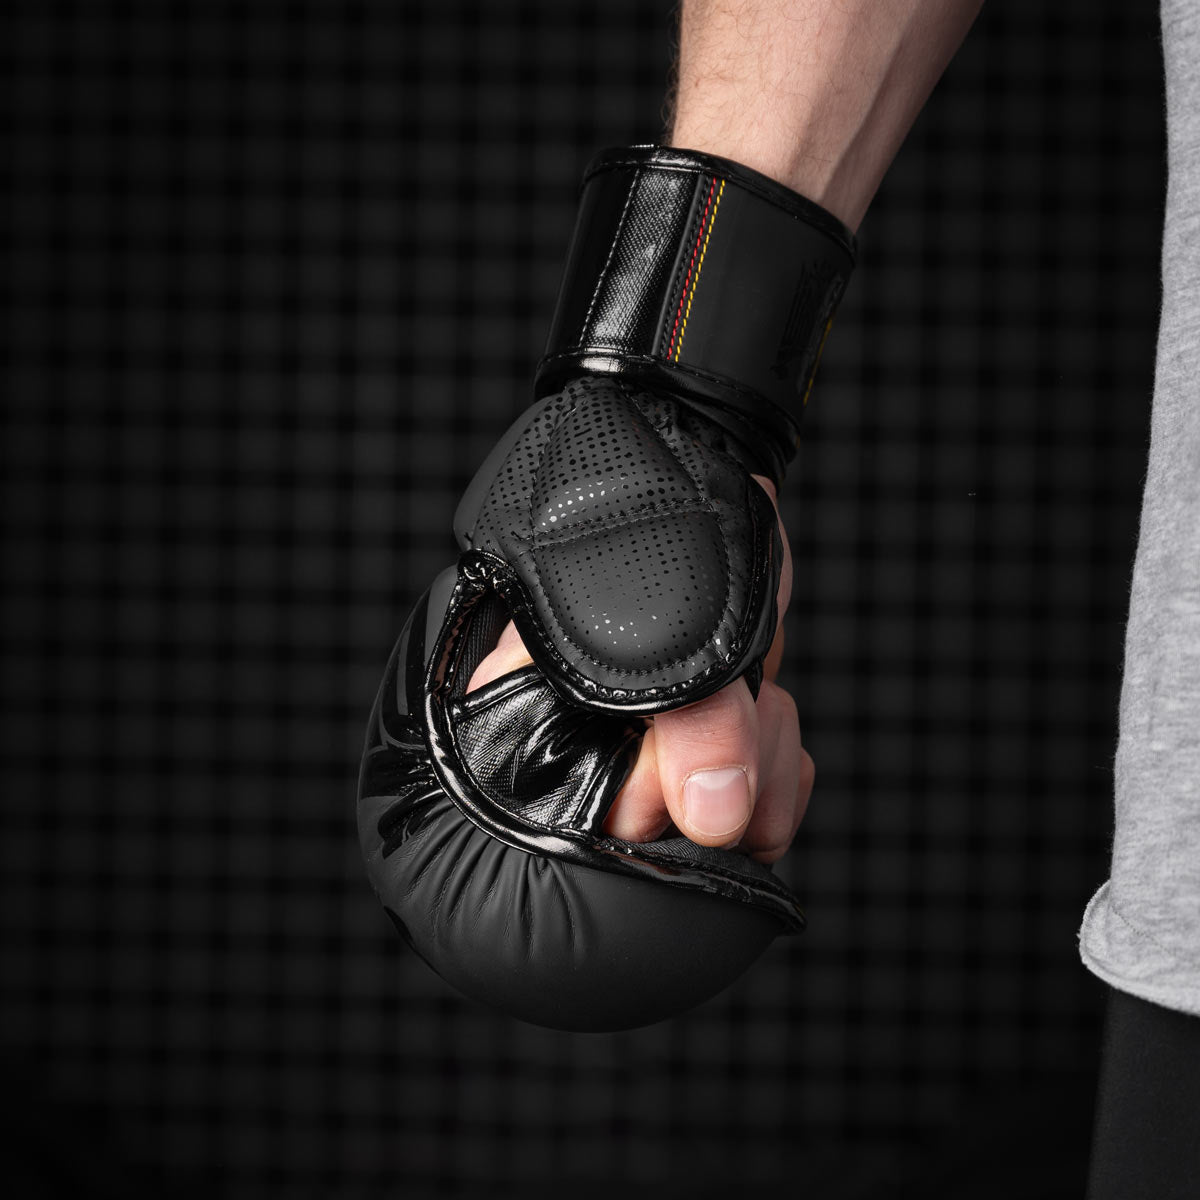 Phantom Team Germany MMA Sparringshandschuhe für Training und Wettkampf. Mit großem Deutschland Adler und vielen Details. Hochwertigste Verarbeitung und  überragende Schutzwirkung. 